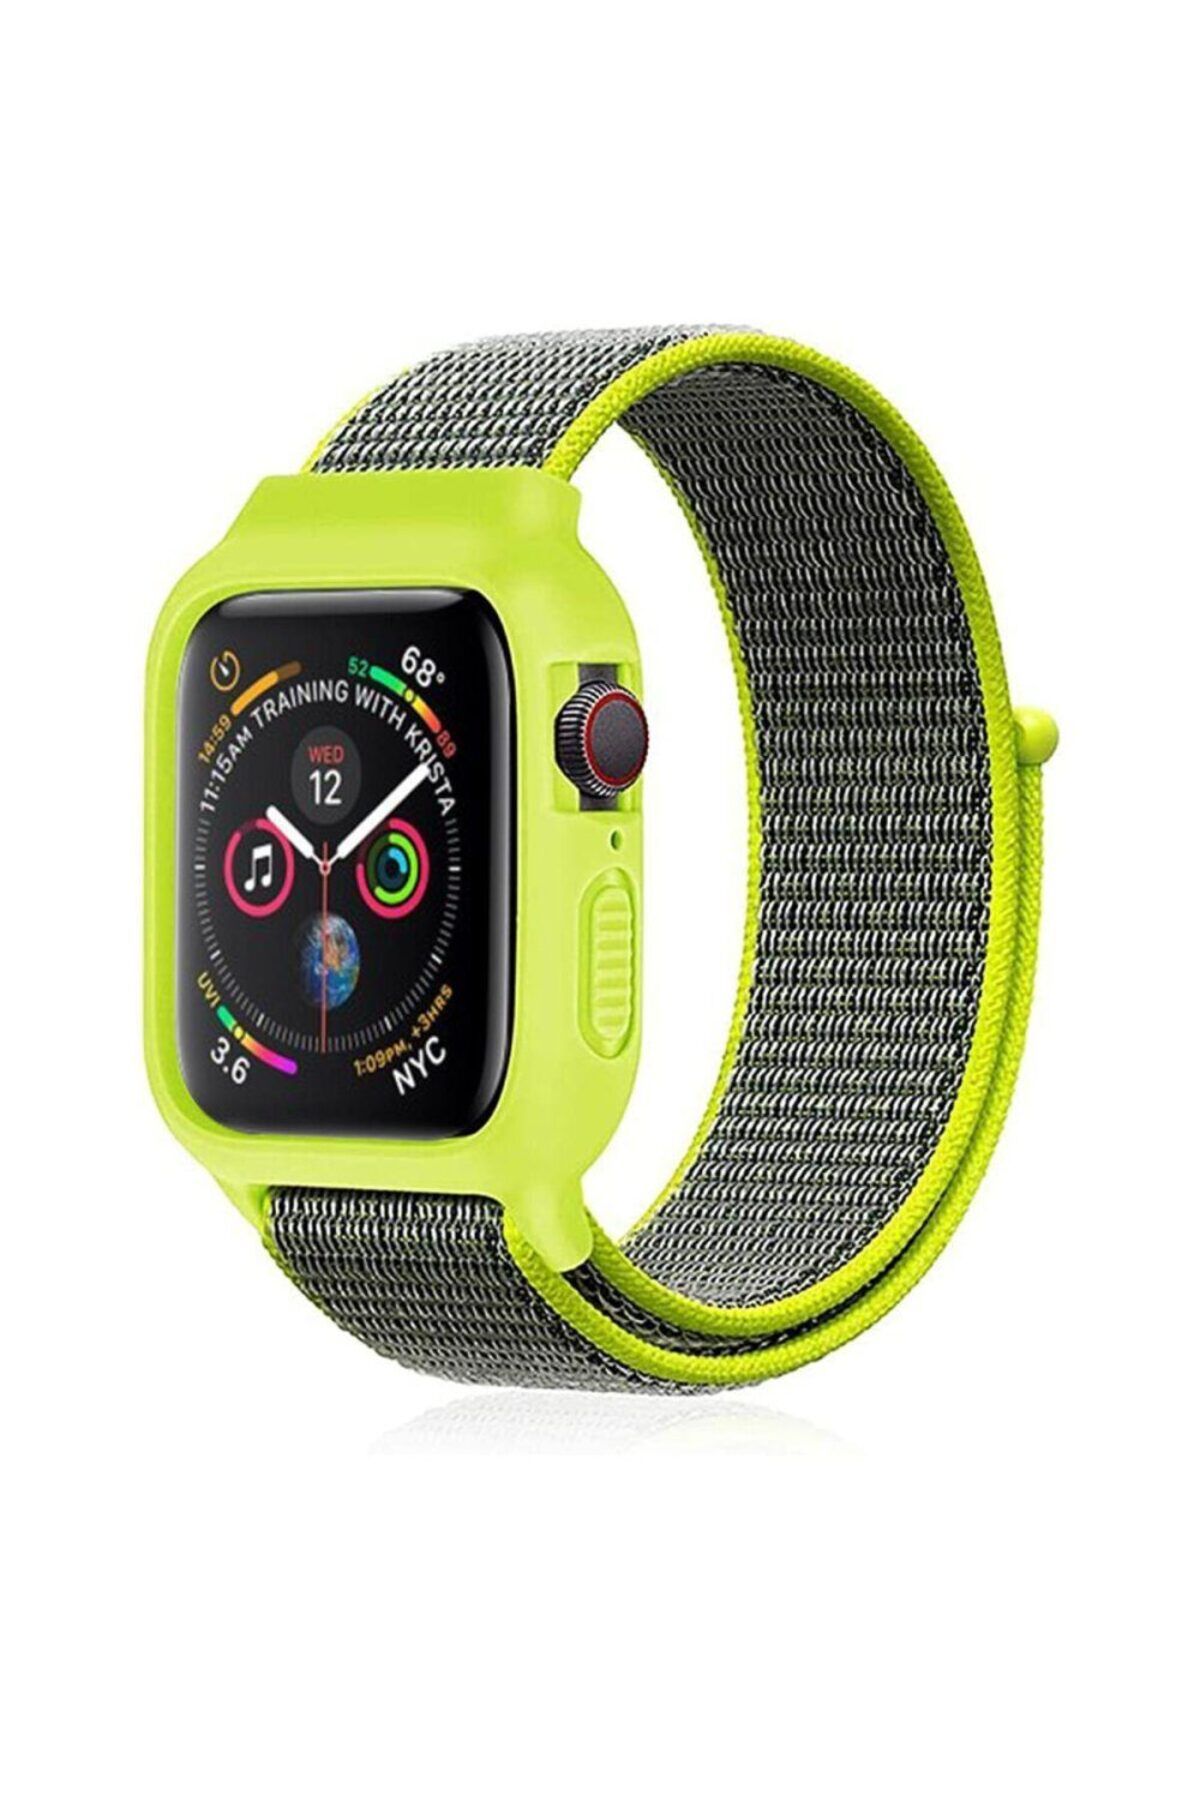 Lisinya Apple Watch 44mm Hasırlı Cırtcırtlı Kasalı Kordon - Ürün Rengi : Sarı-Lacivert - Lisinya